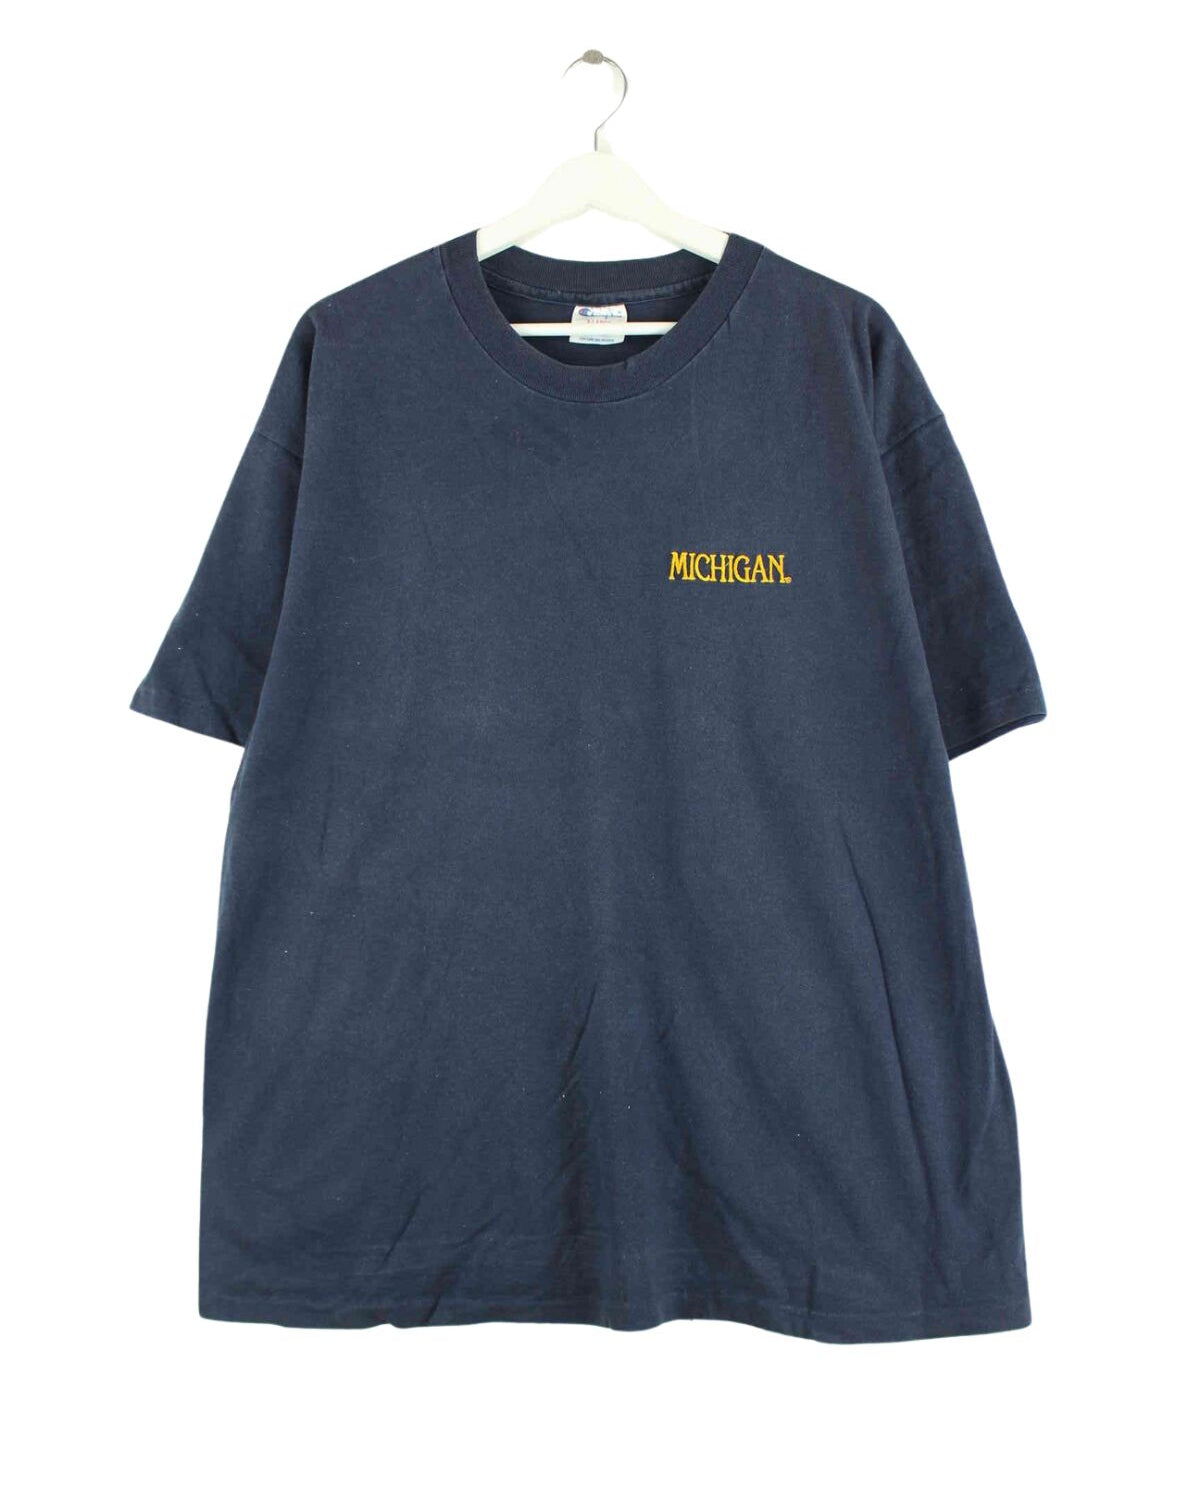 Champion Michigan Embrodiered Single Stitched T-Shirt Blau XL (front image)